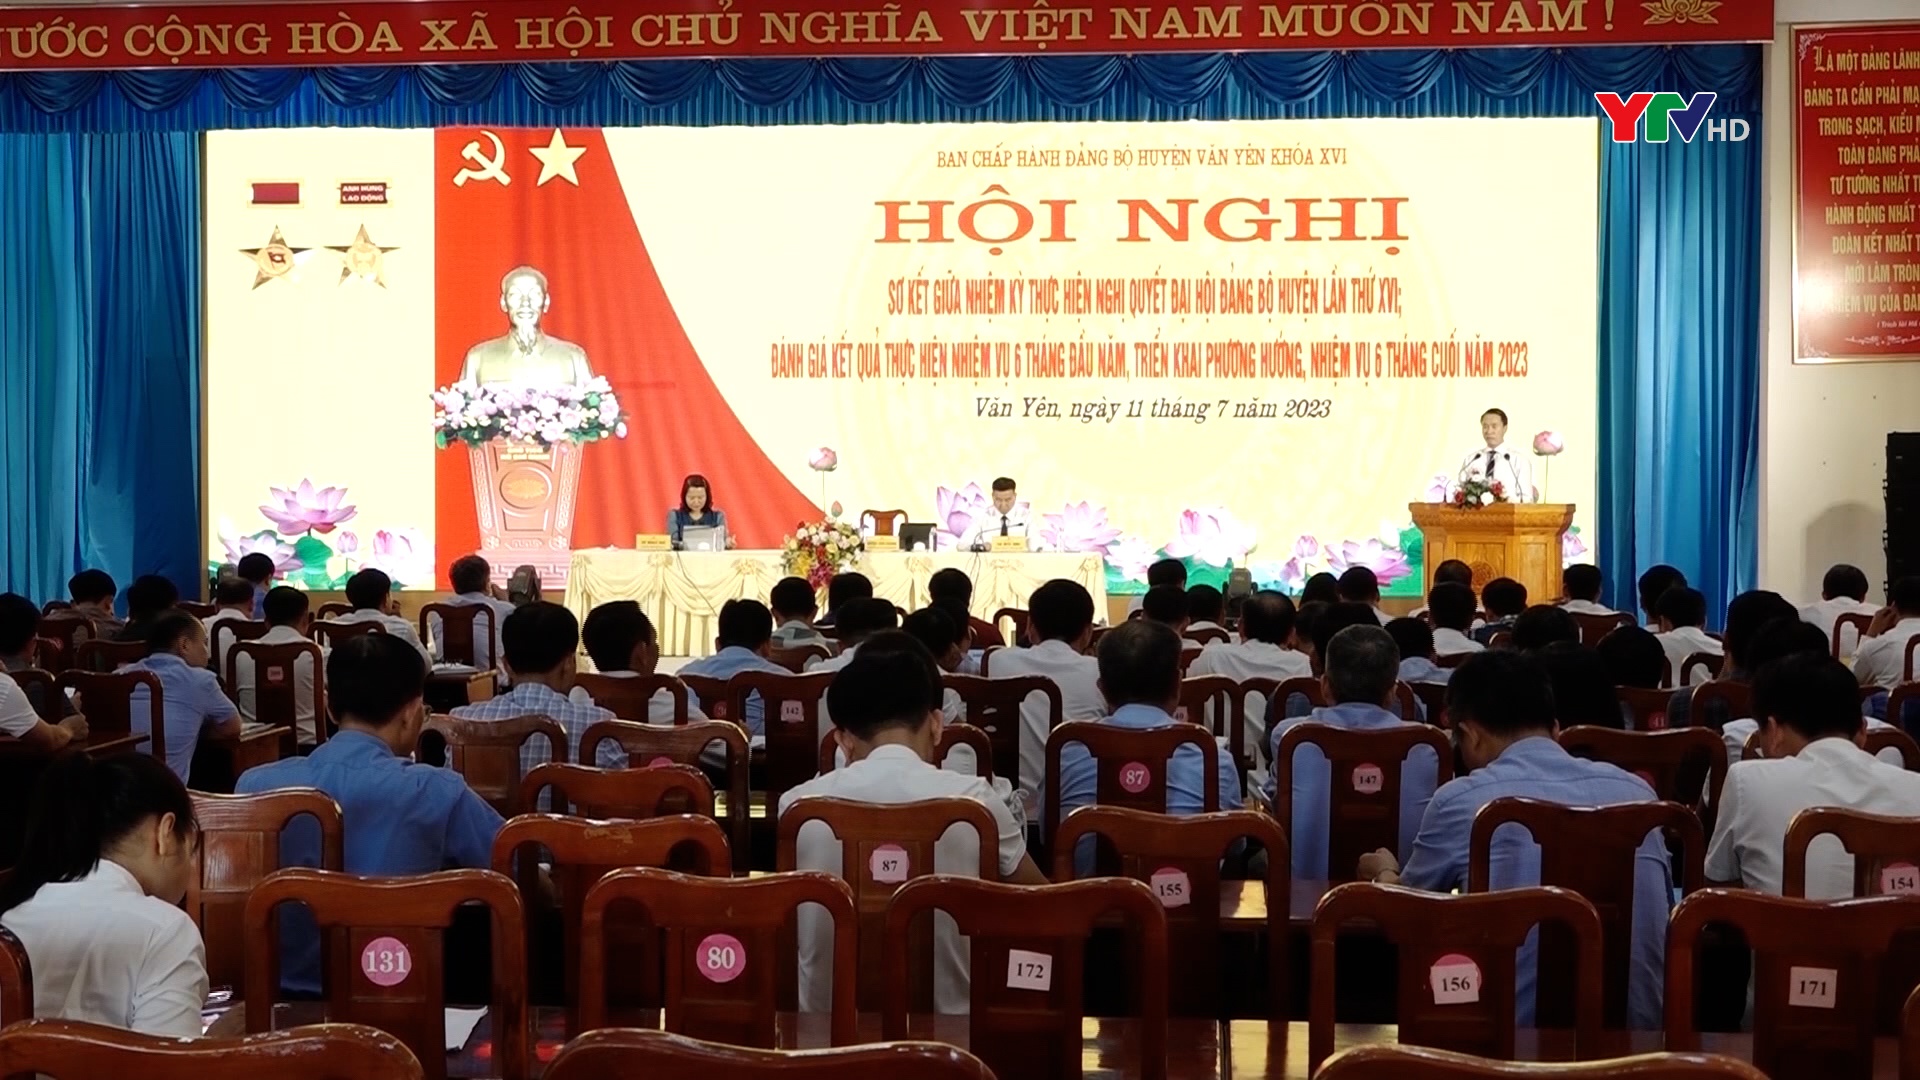 Đảng bộ huyện Văn Yên sáng tạo trong thực hiện Nghị quyết Đại hội Đảng các cấp